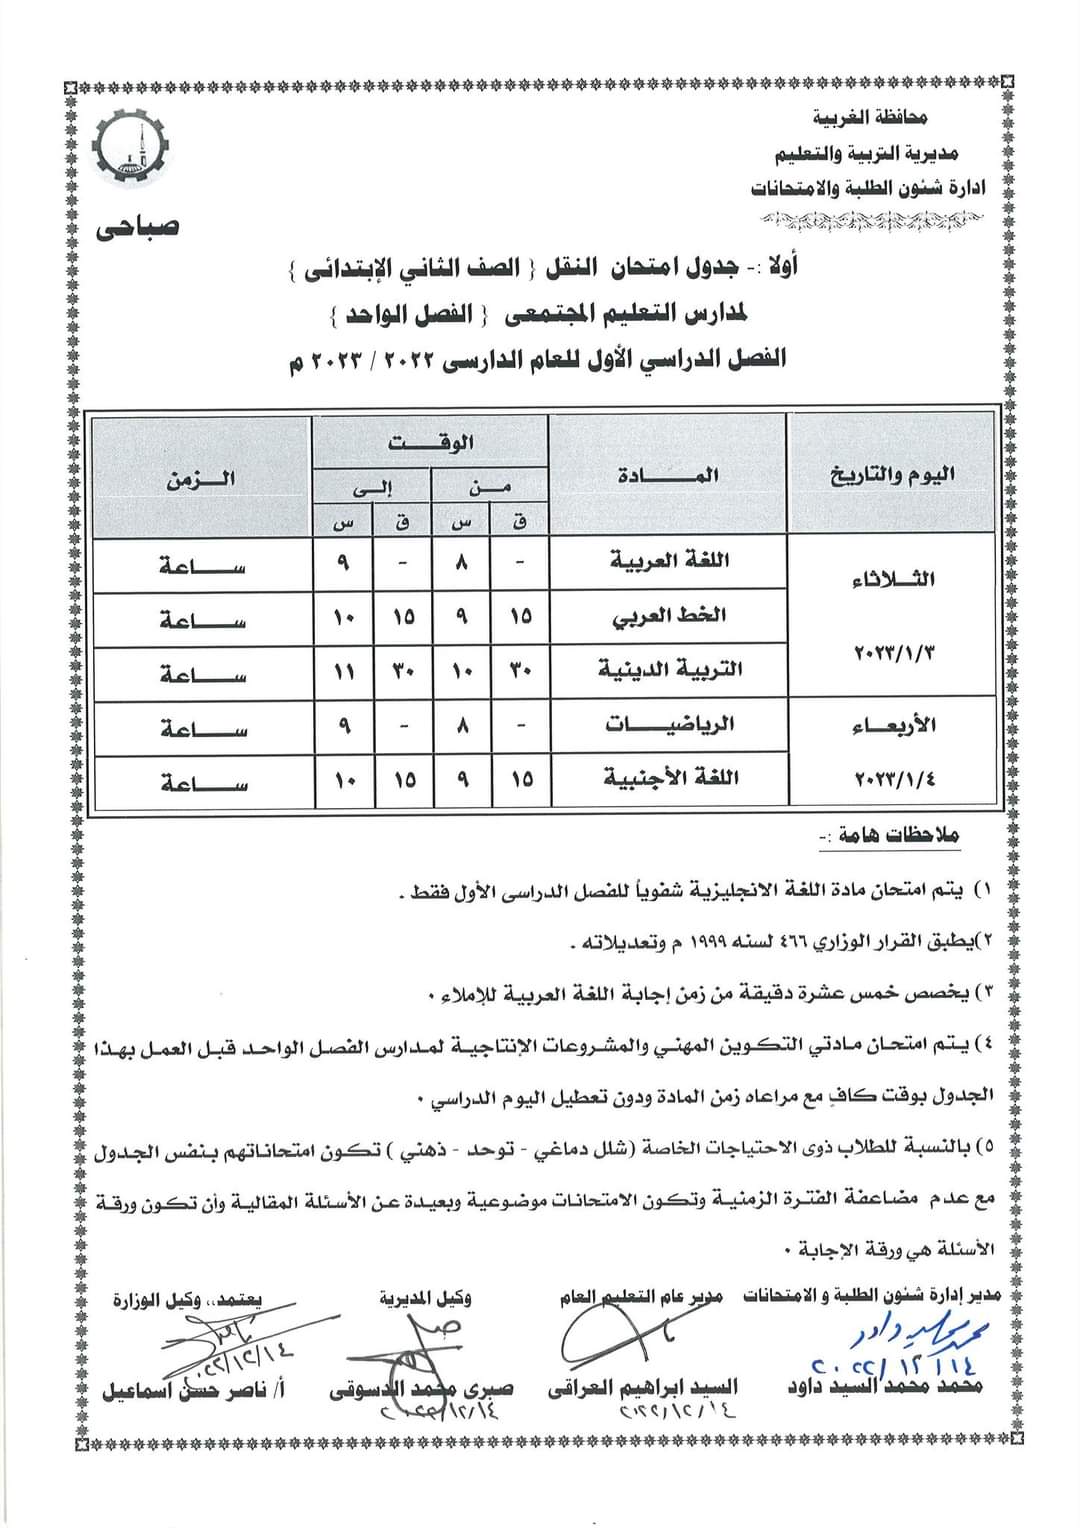 جداول امتحانات الفصل الدراسى الأول لصفوف النقل (1)